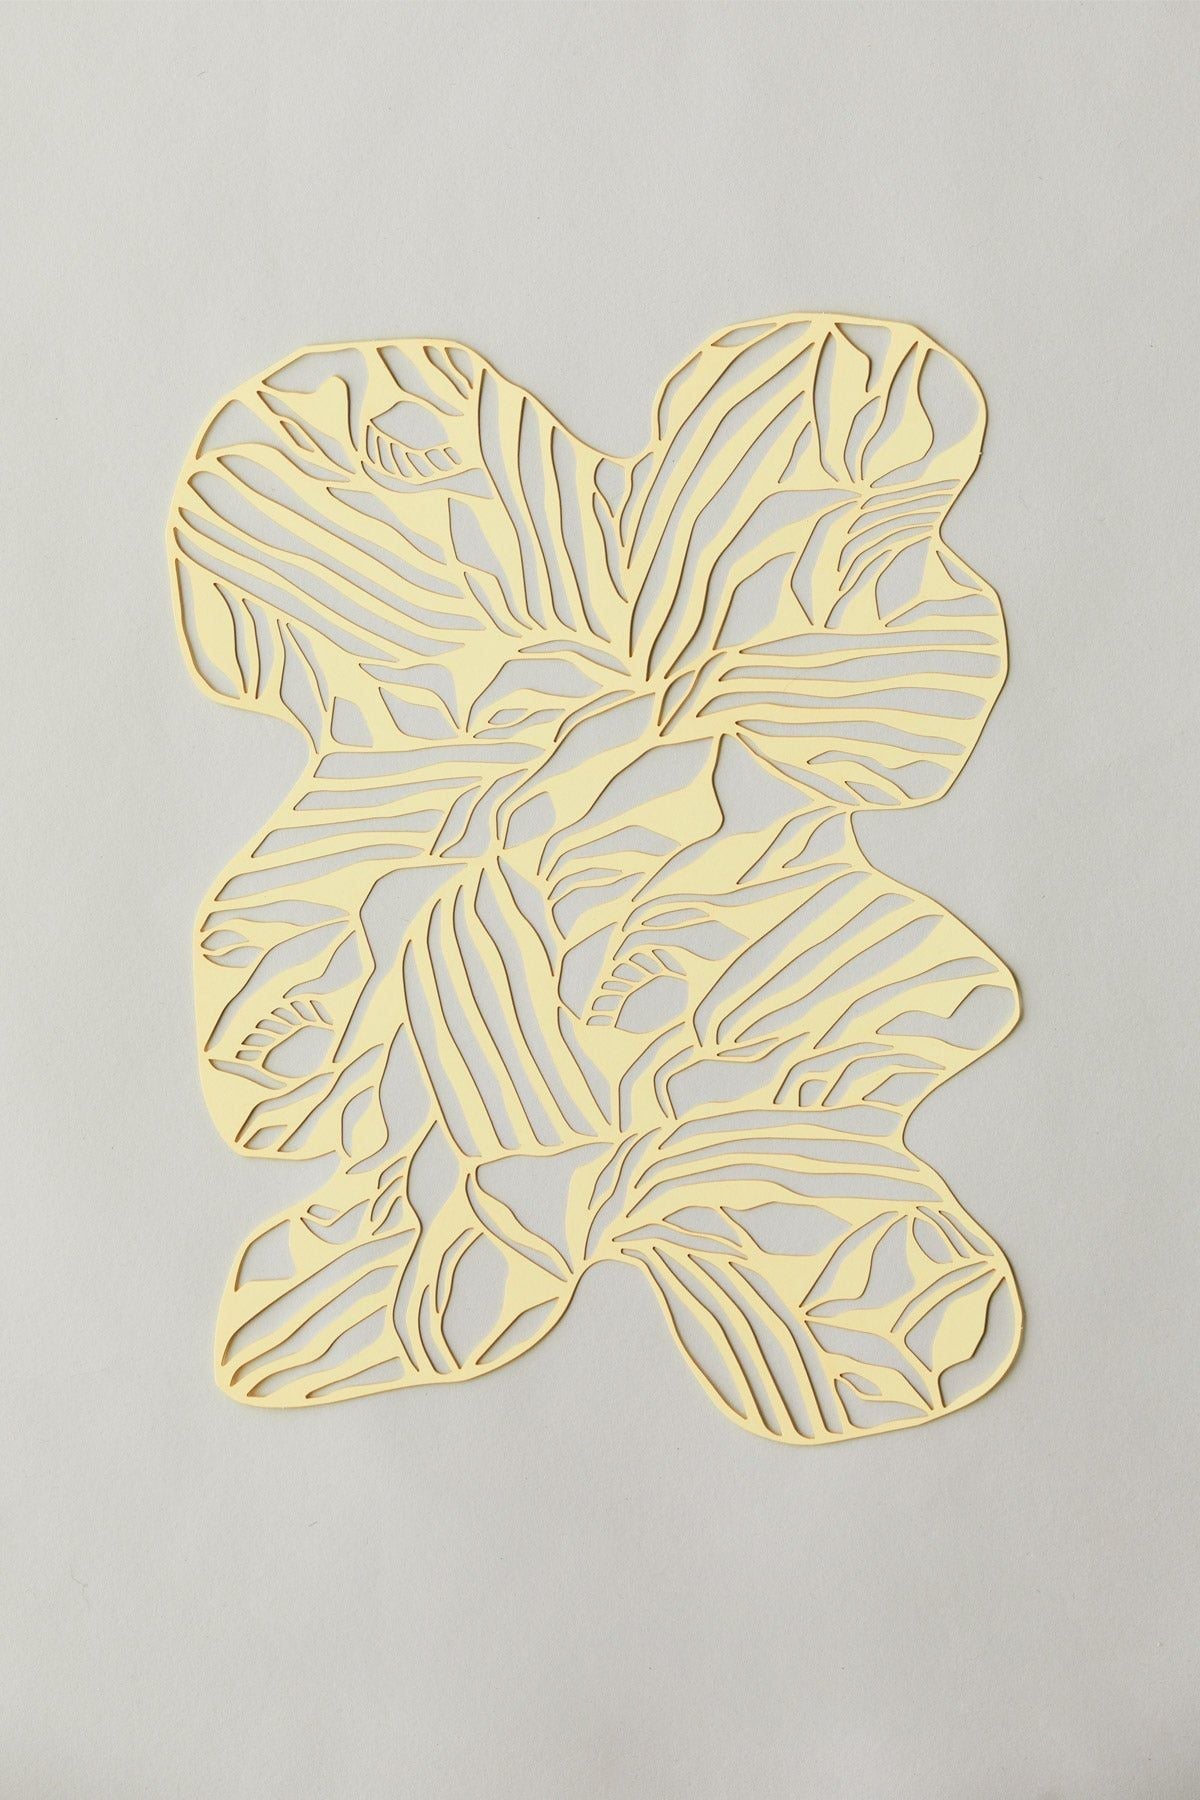 Studio sul rettangolo organico di papercut A4, giallo